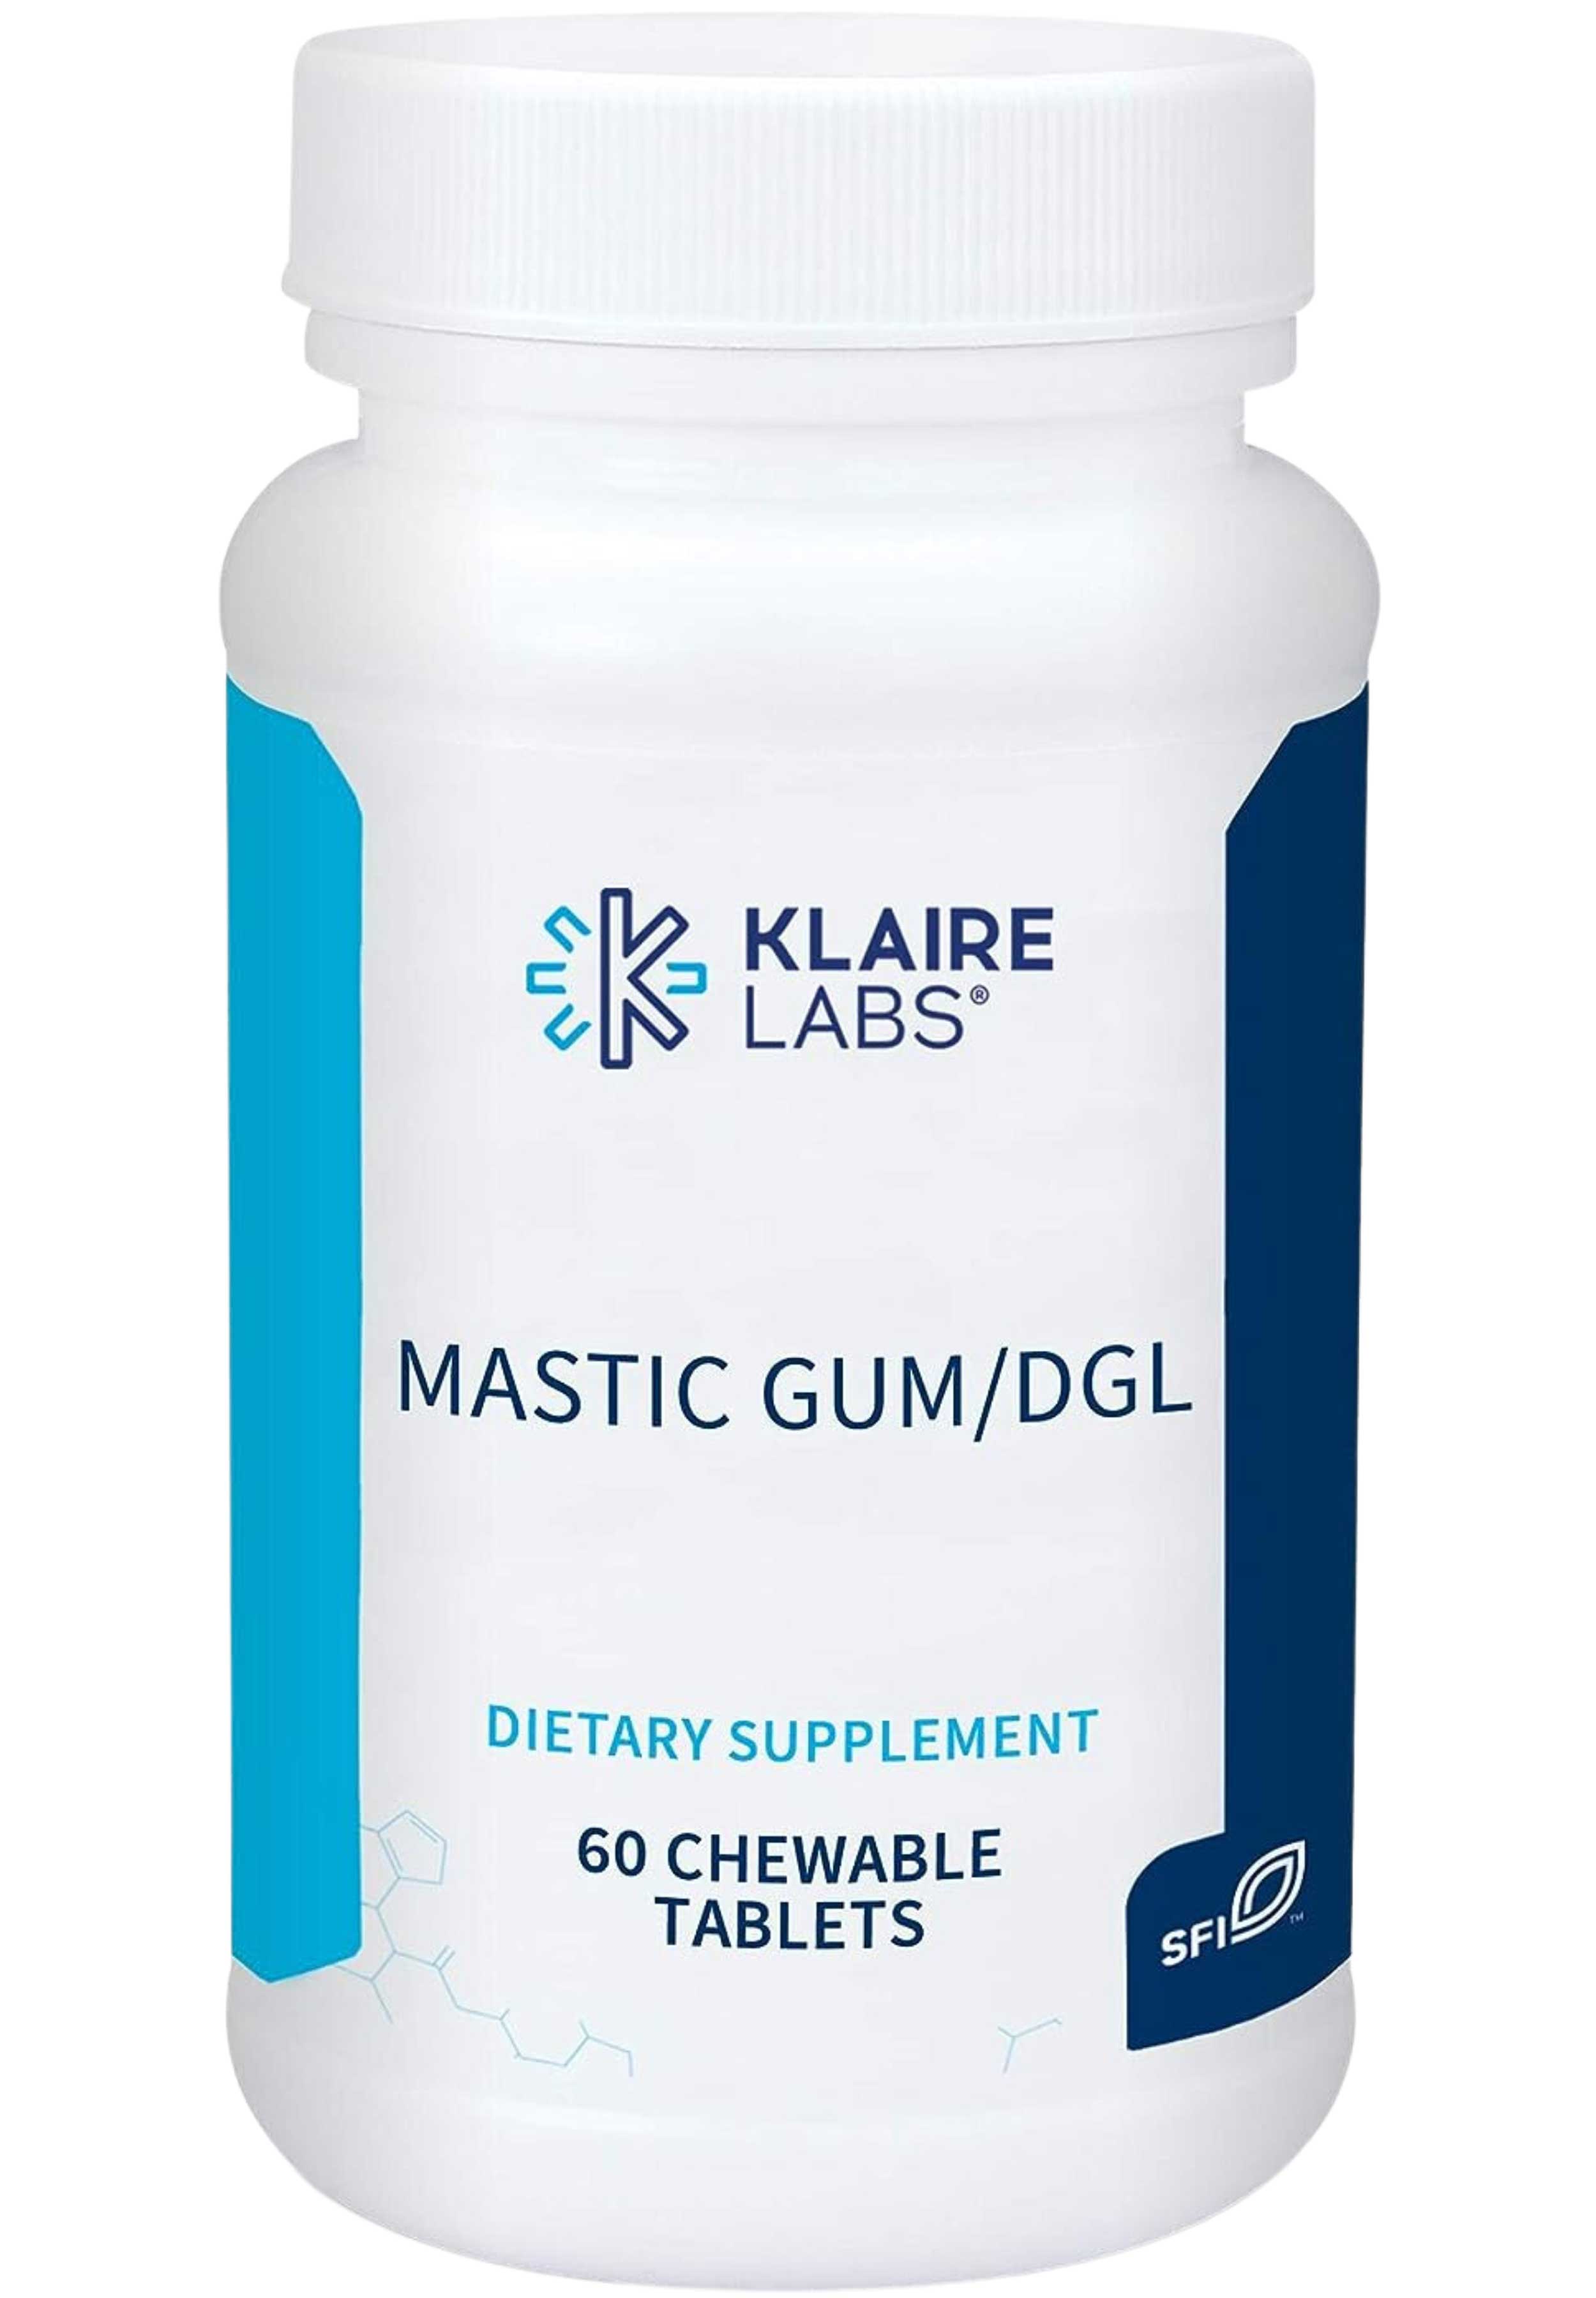 Klaire Labs Mastic Gum/DGL 